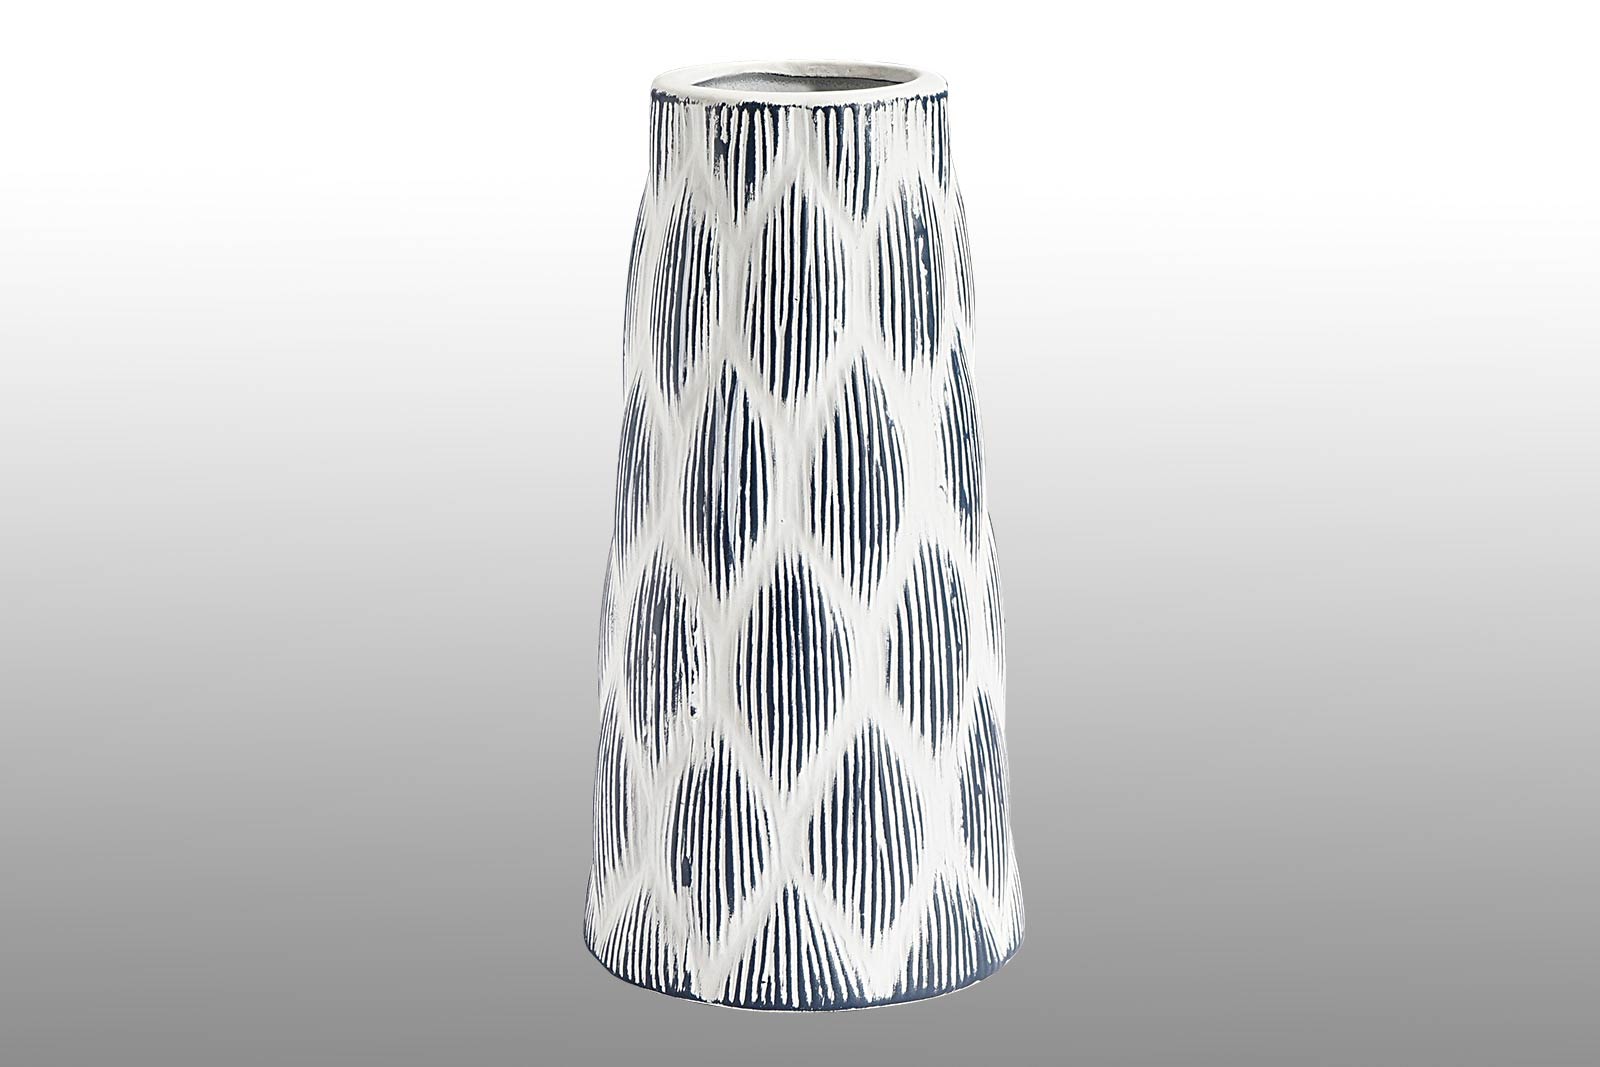 Rhombus Design Vase